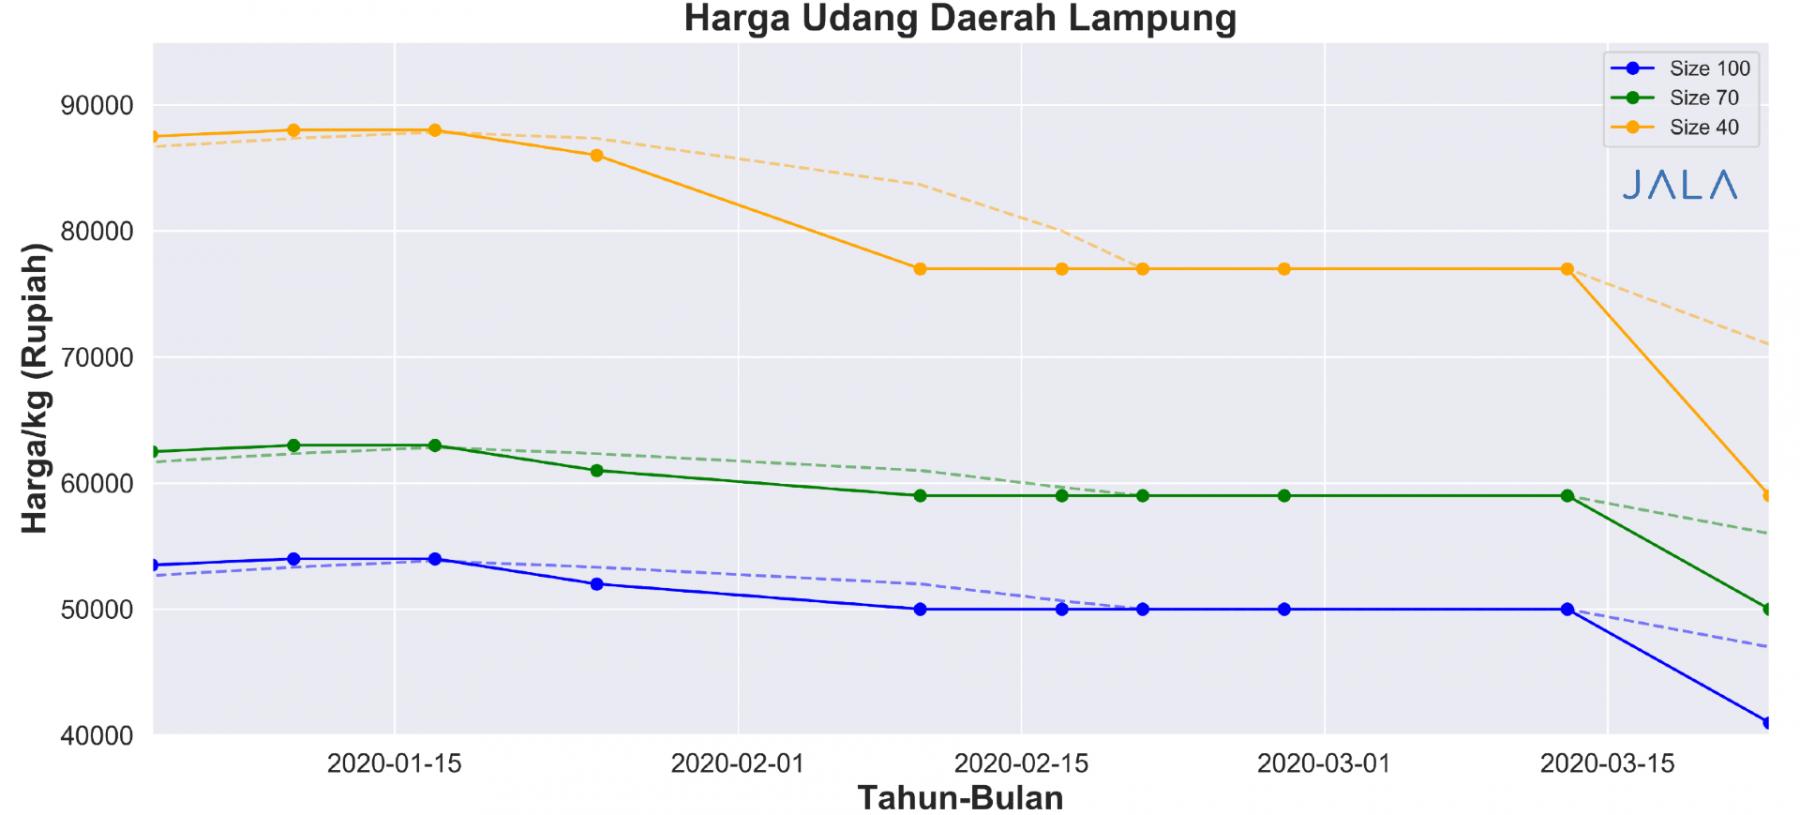 Harga udang daerah Lampung bulan Januari-Maret 2020